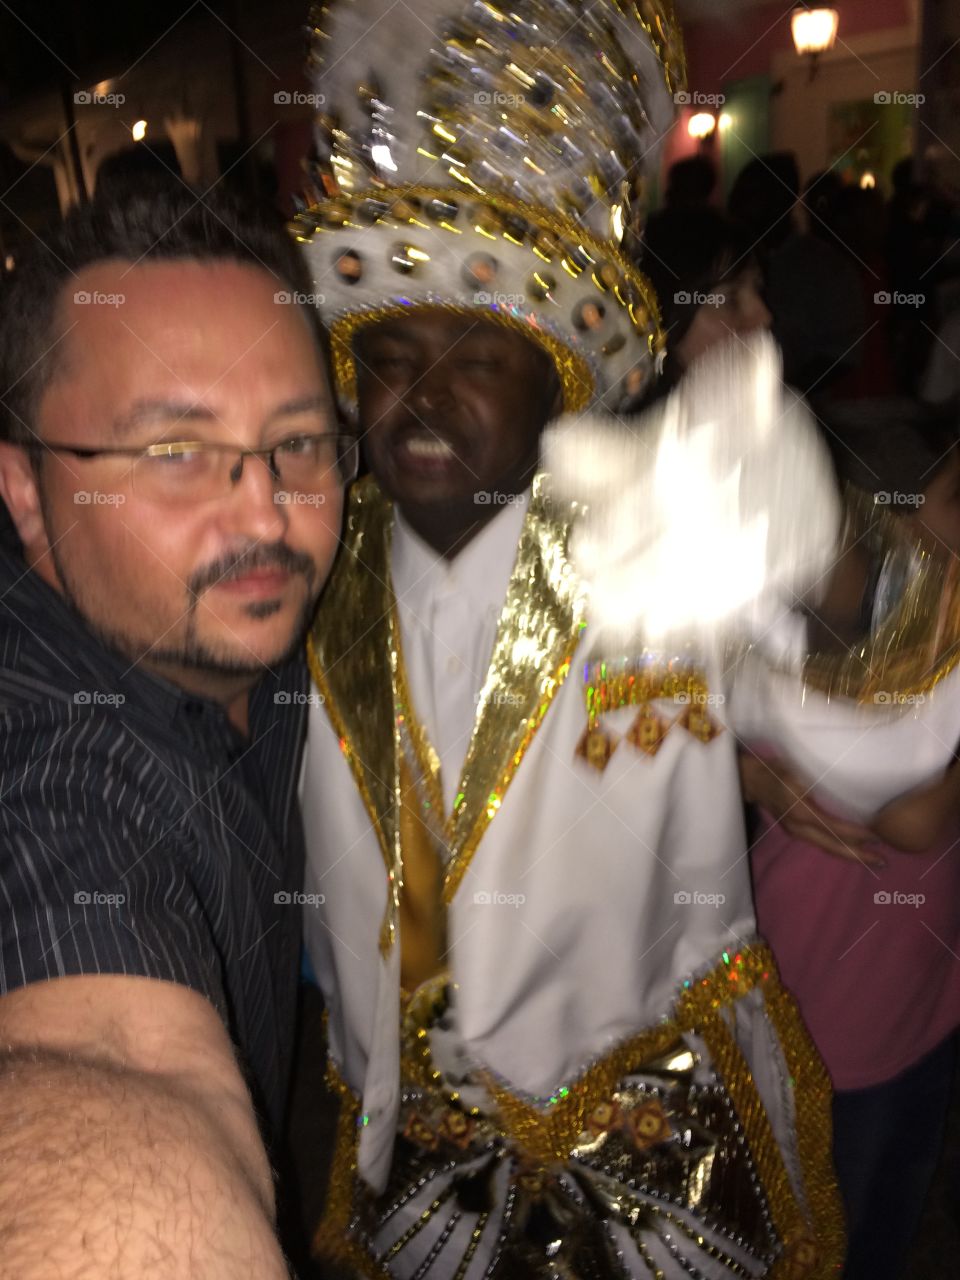 "The Junkaroo Head Master"

Hitin it up at the Junkaroo in the Bahamas 